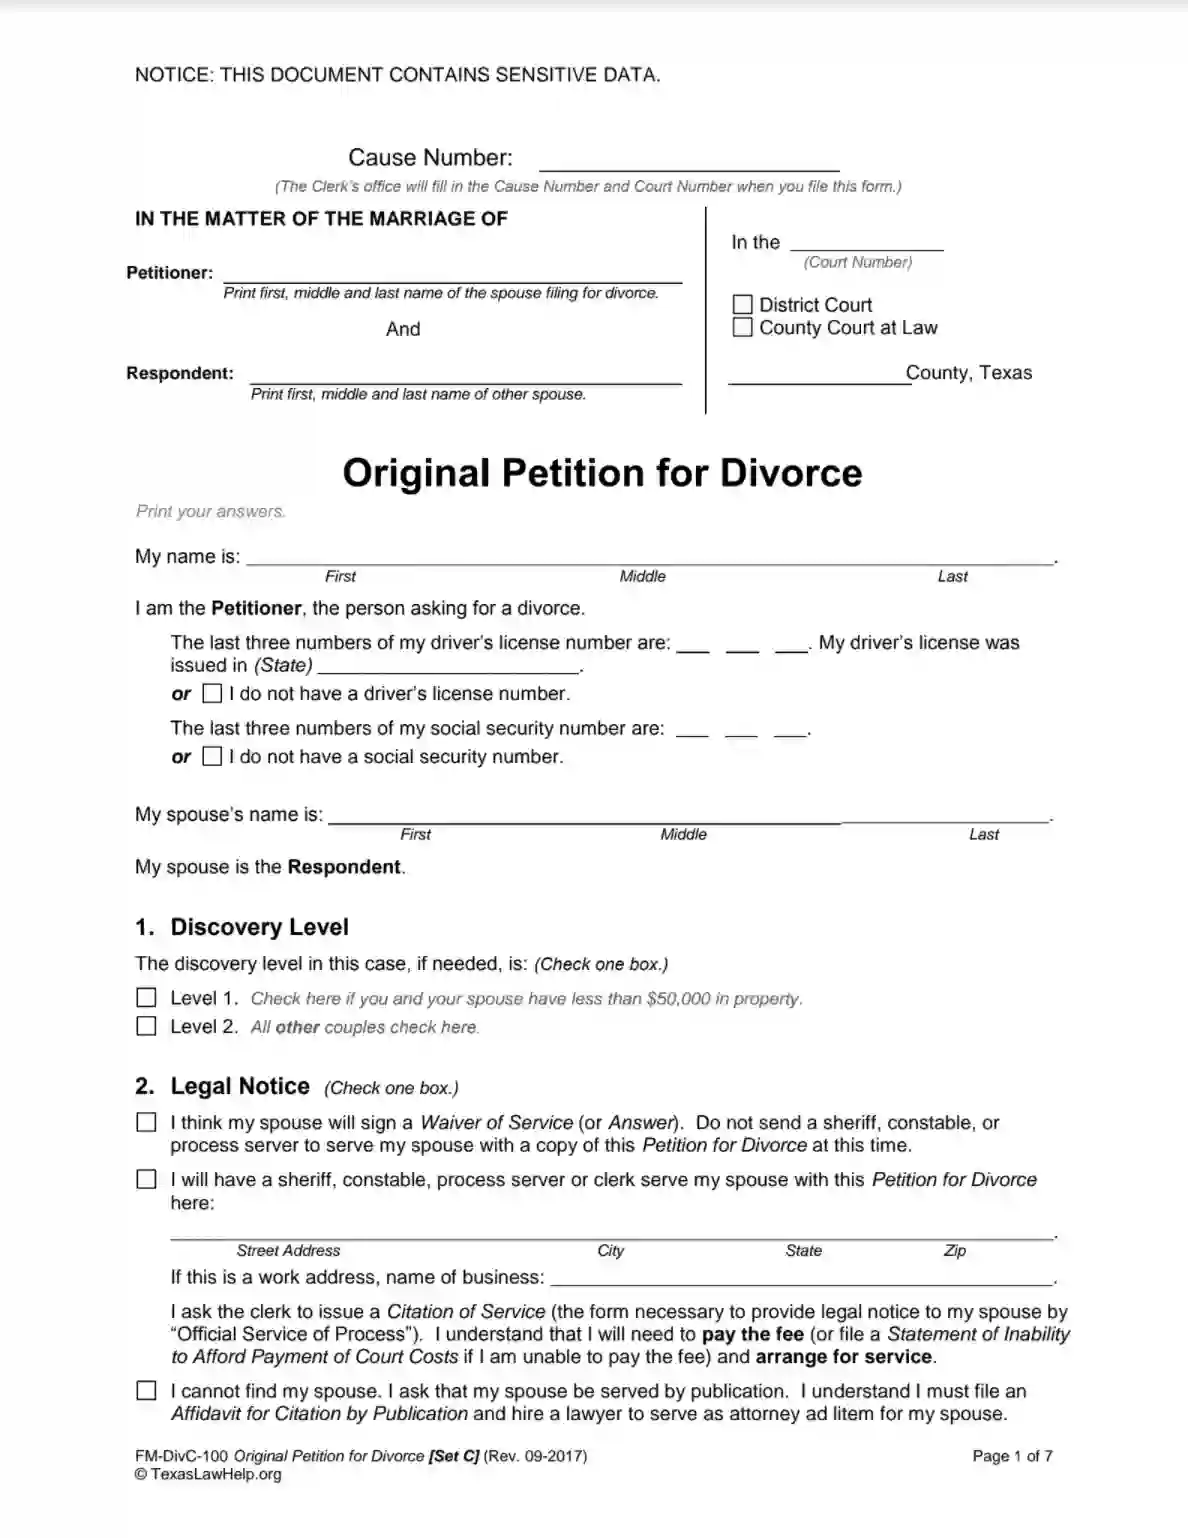 texas law help fm-divc-100 original petition for divorce set c